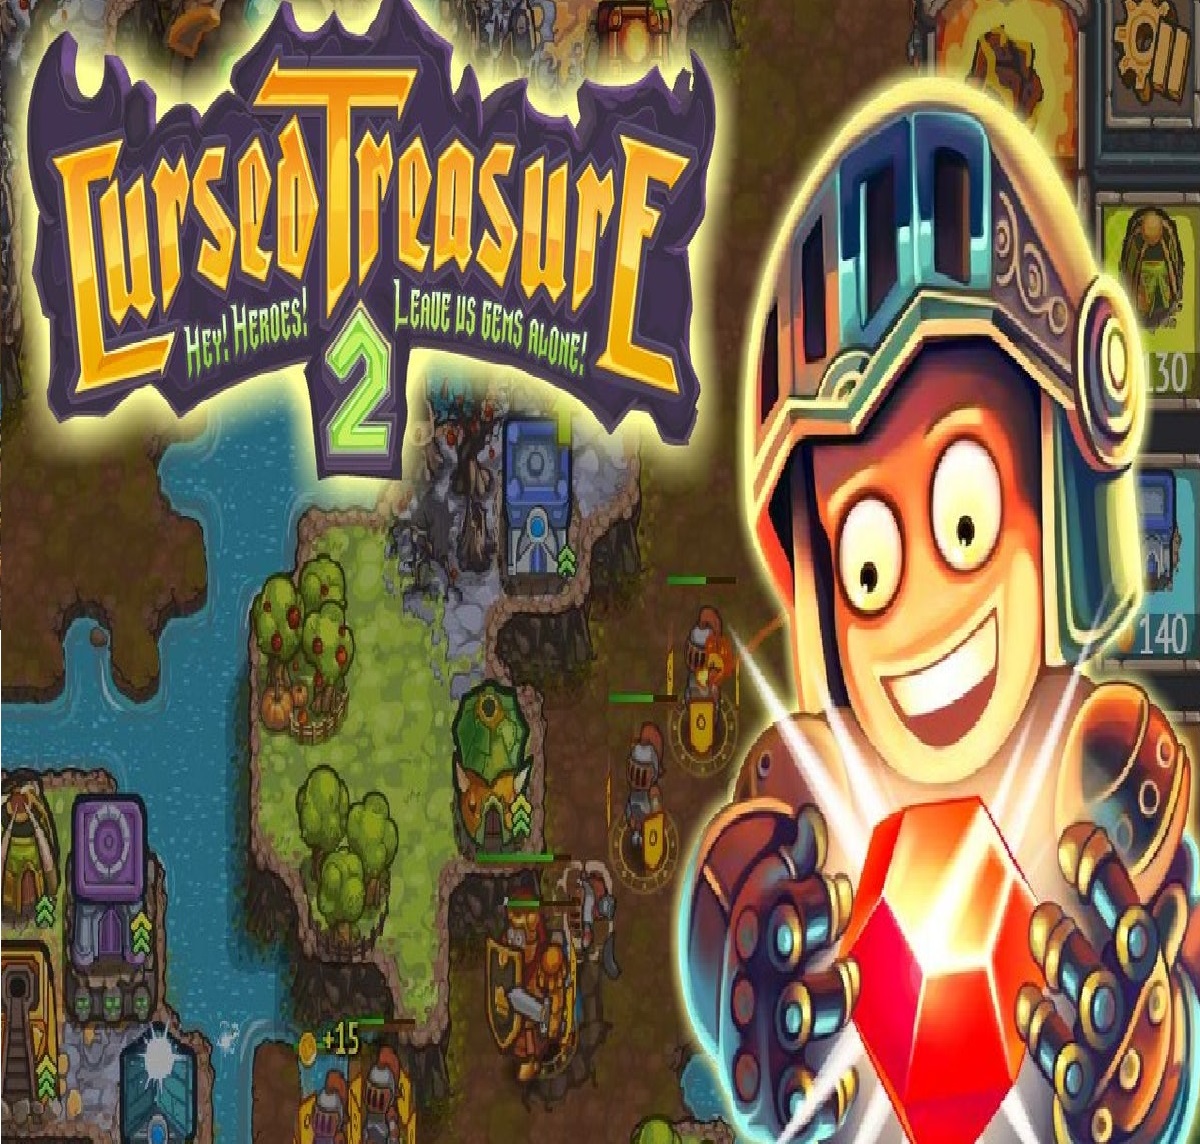 Cursed Treasure 2 (Steam key / Region Free)